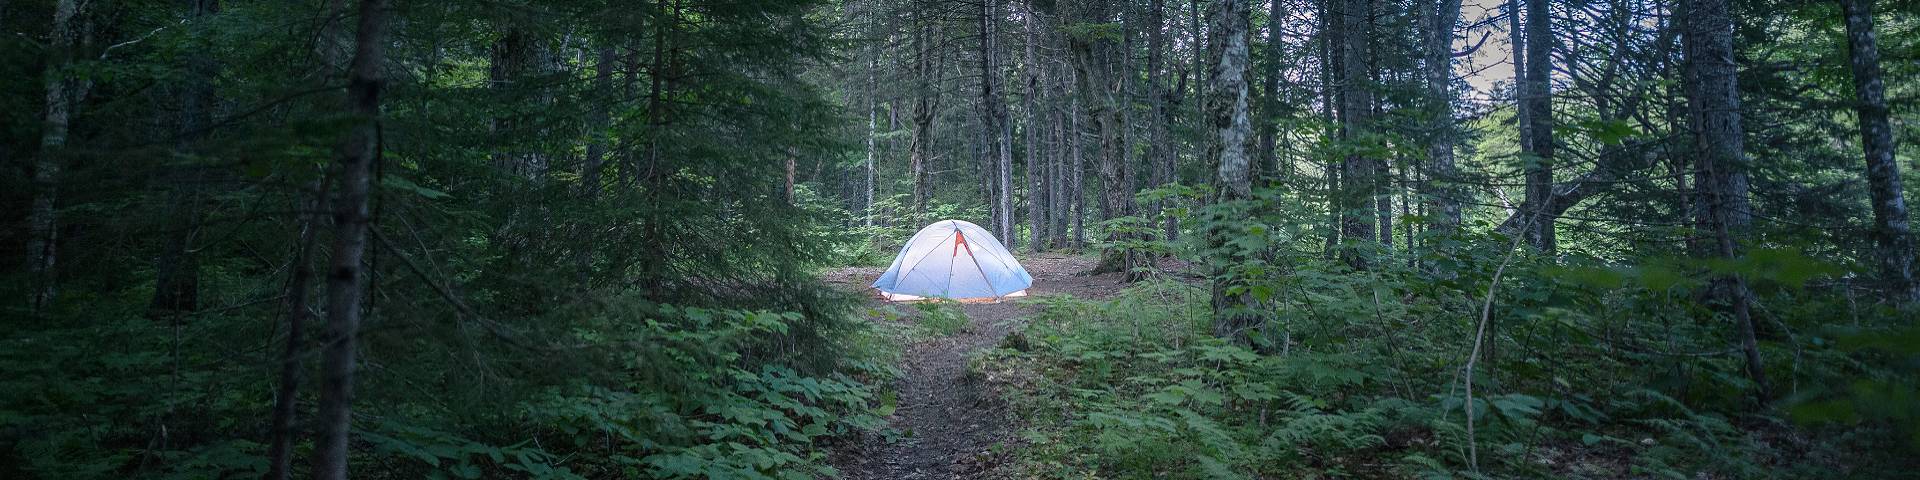 Une tente dans la forêt